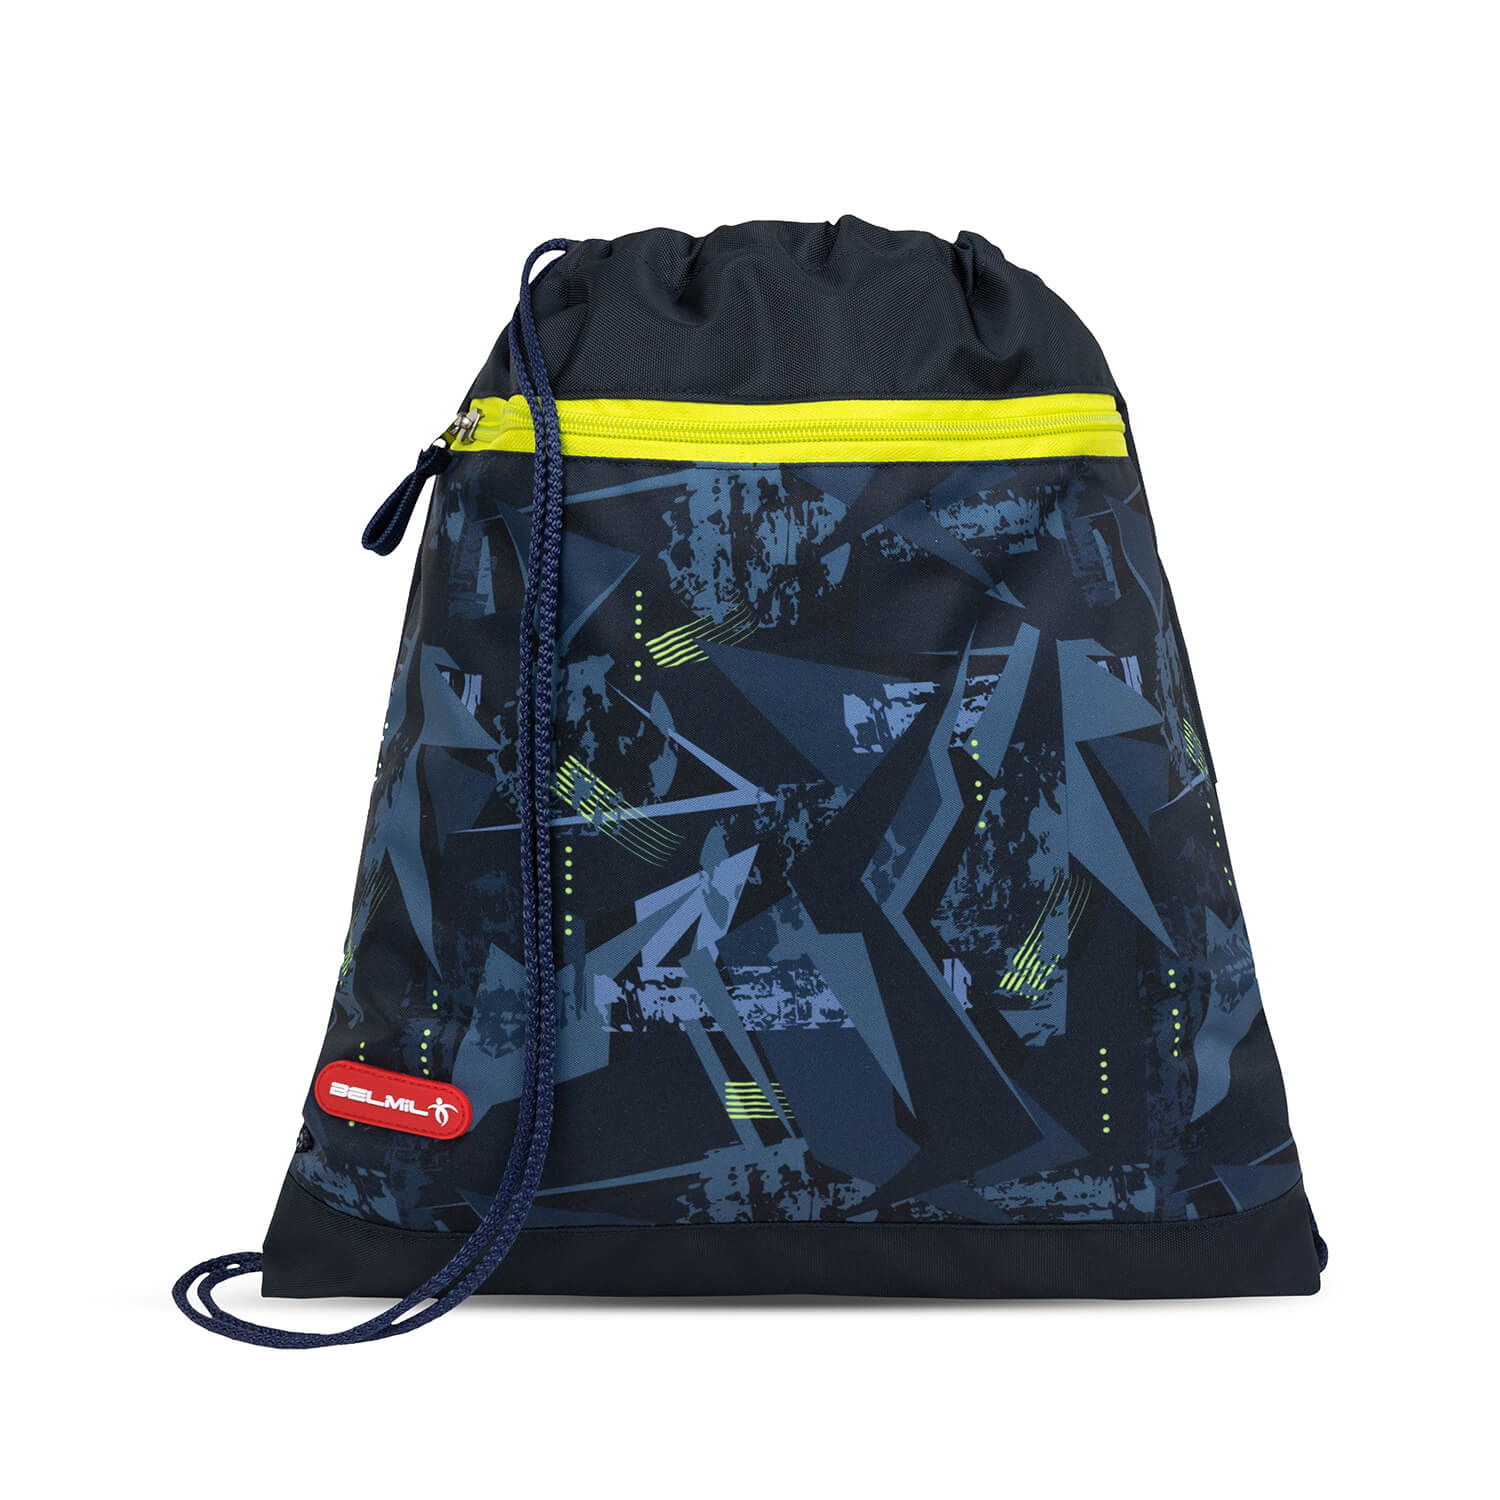 Classy Plus T-Rex Lime schoolbag set 5 pcs